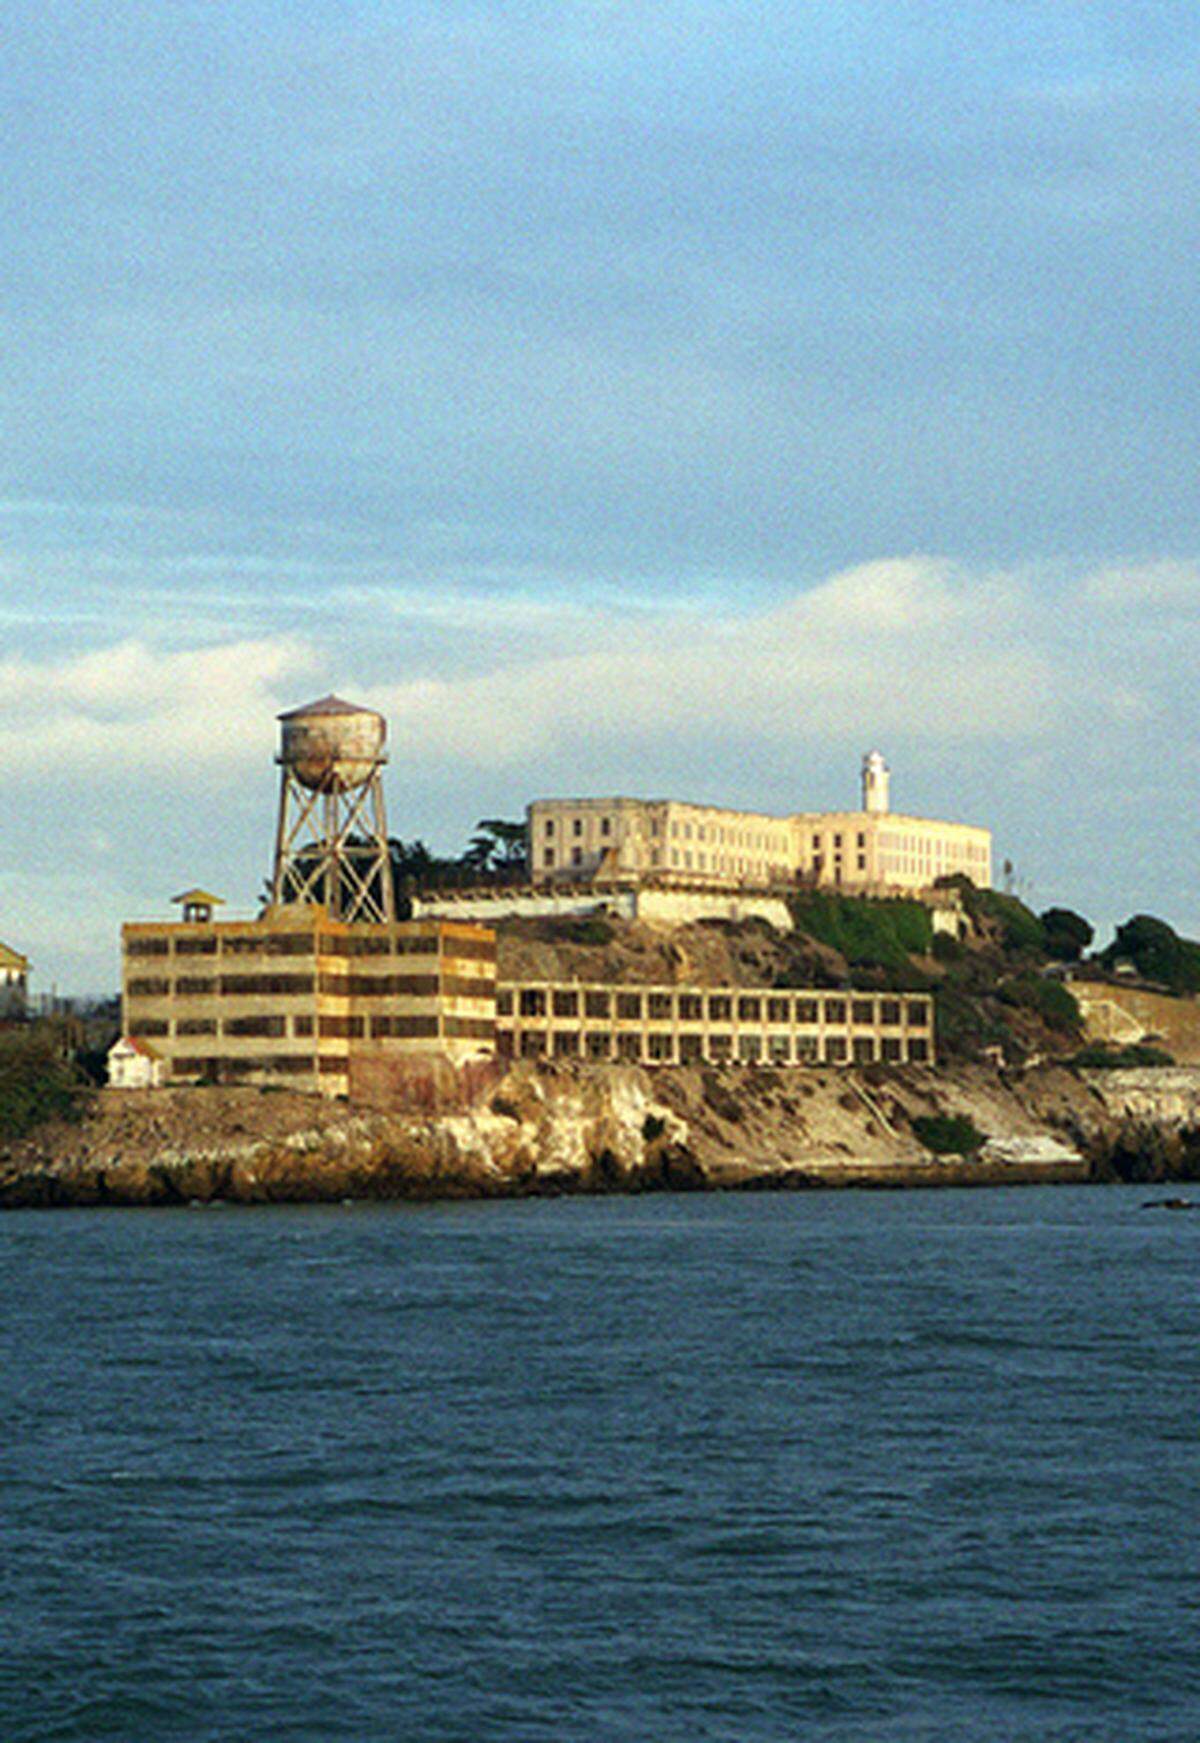 Zum Abschluss noch ein Mythos: Die Festung Alcatraz in der Bucht von San Francisco galt als absolut ausbruchssicher. 14 Versuche gab es, offiziell sind alle gescheitert.  1962 gruben jedoch Frank Morris und die Brüder John und Clarence Anglin einen Tunnel durch die vom Salzwasser zerfressenen Gefängnismauern. Mit einem selbstgebastelten Schlauchboot aus Regenmänteln versuchten sie, zu entkommen. Mit größter Wahrscheinlichkeit sind sie dabei ertrunken - eine erfolgreiche Flucht ist aber nicht ganz auszuschließen.